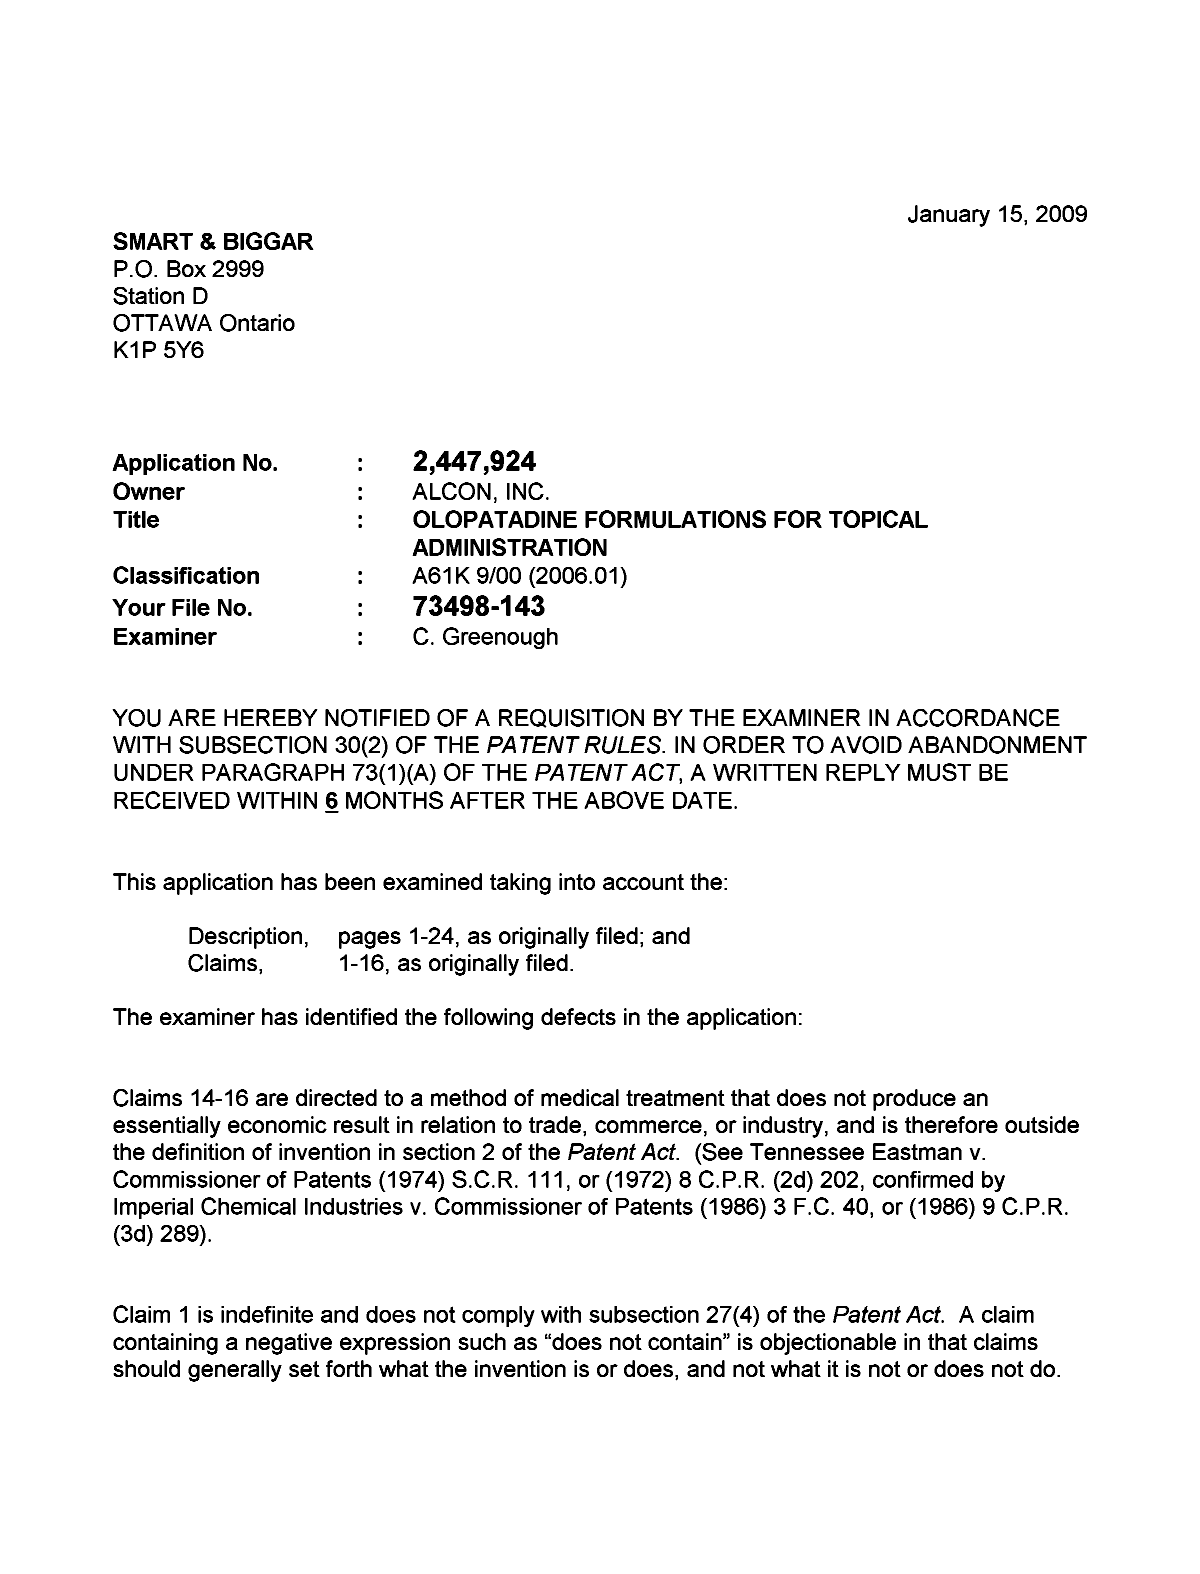 Document de brevet canadien 2447924. Poursuite-Amendment 20081215. Image 1 de 2